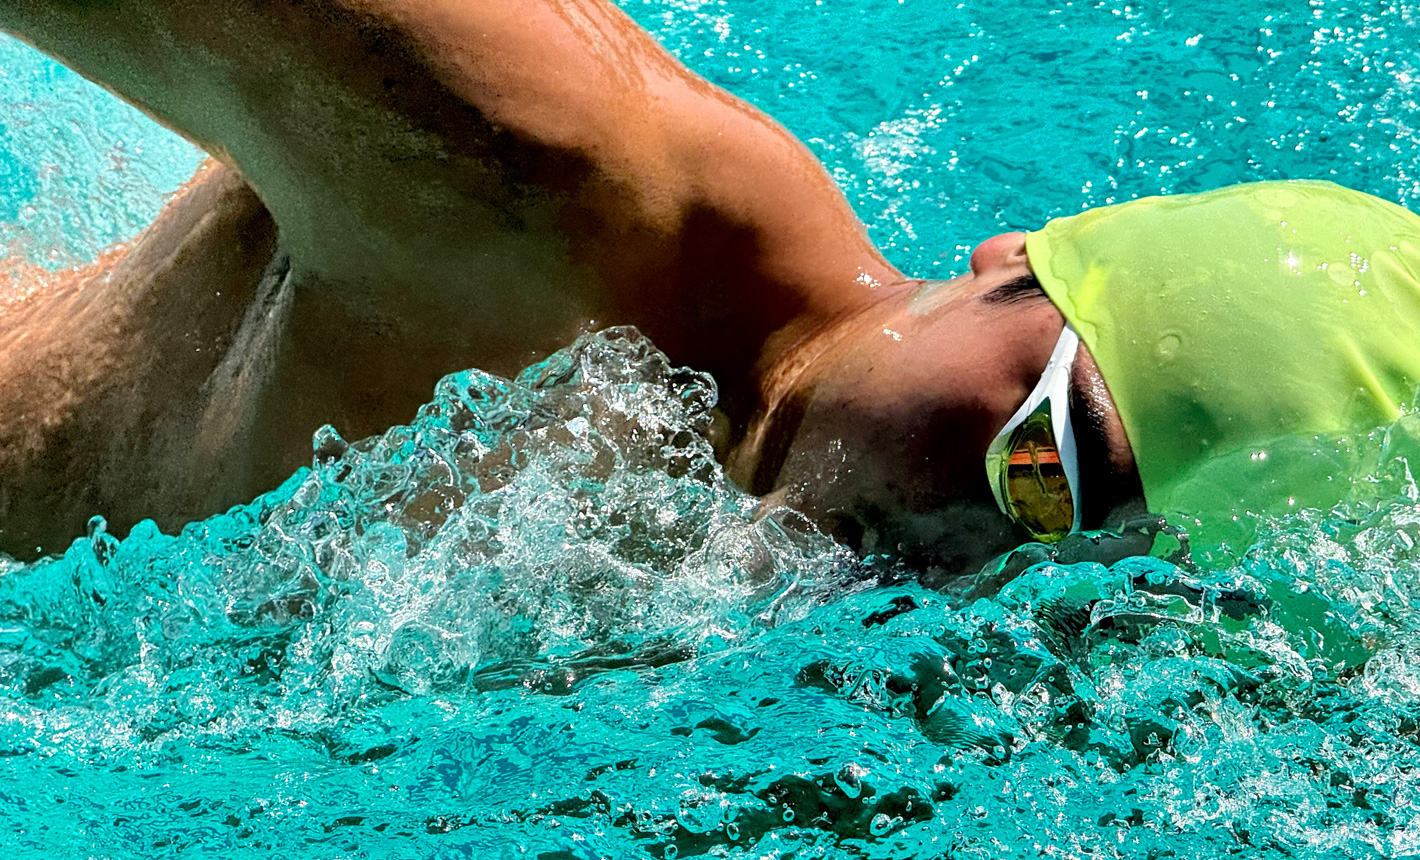 O fotografie foarte detaliată, mărită, a unui înotător într-o piscină, cu stropi de apă în jurul său